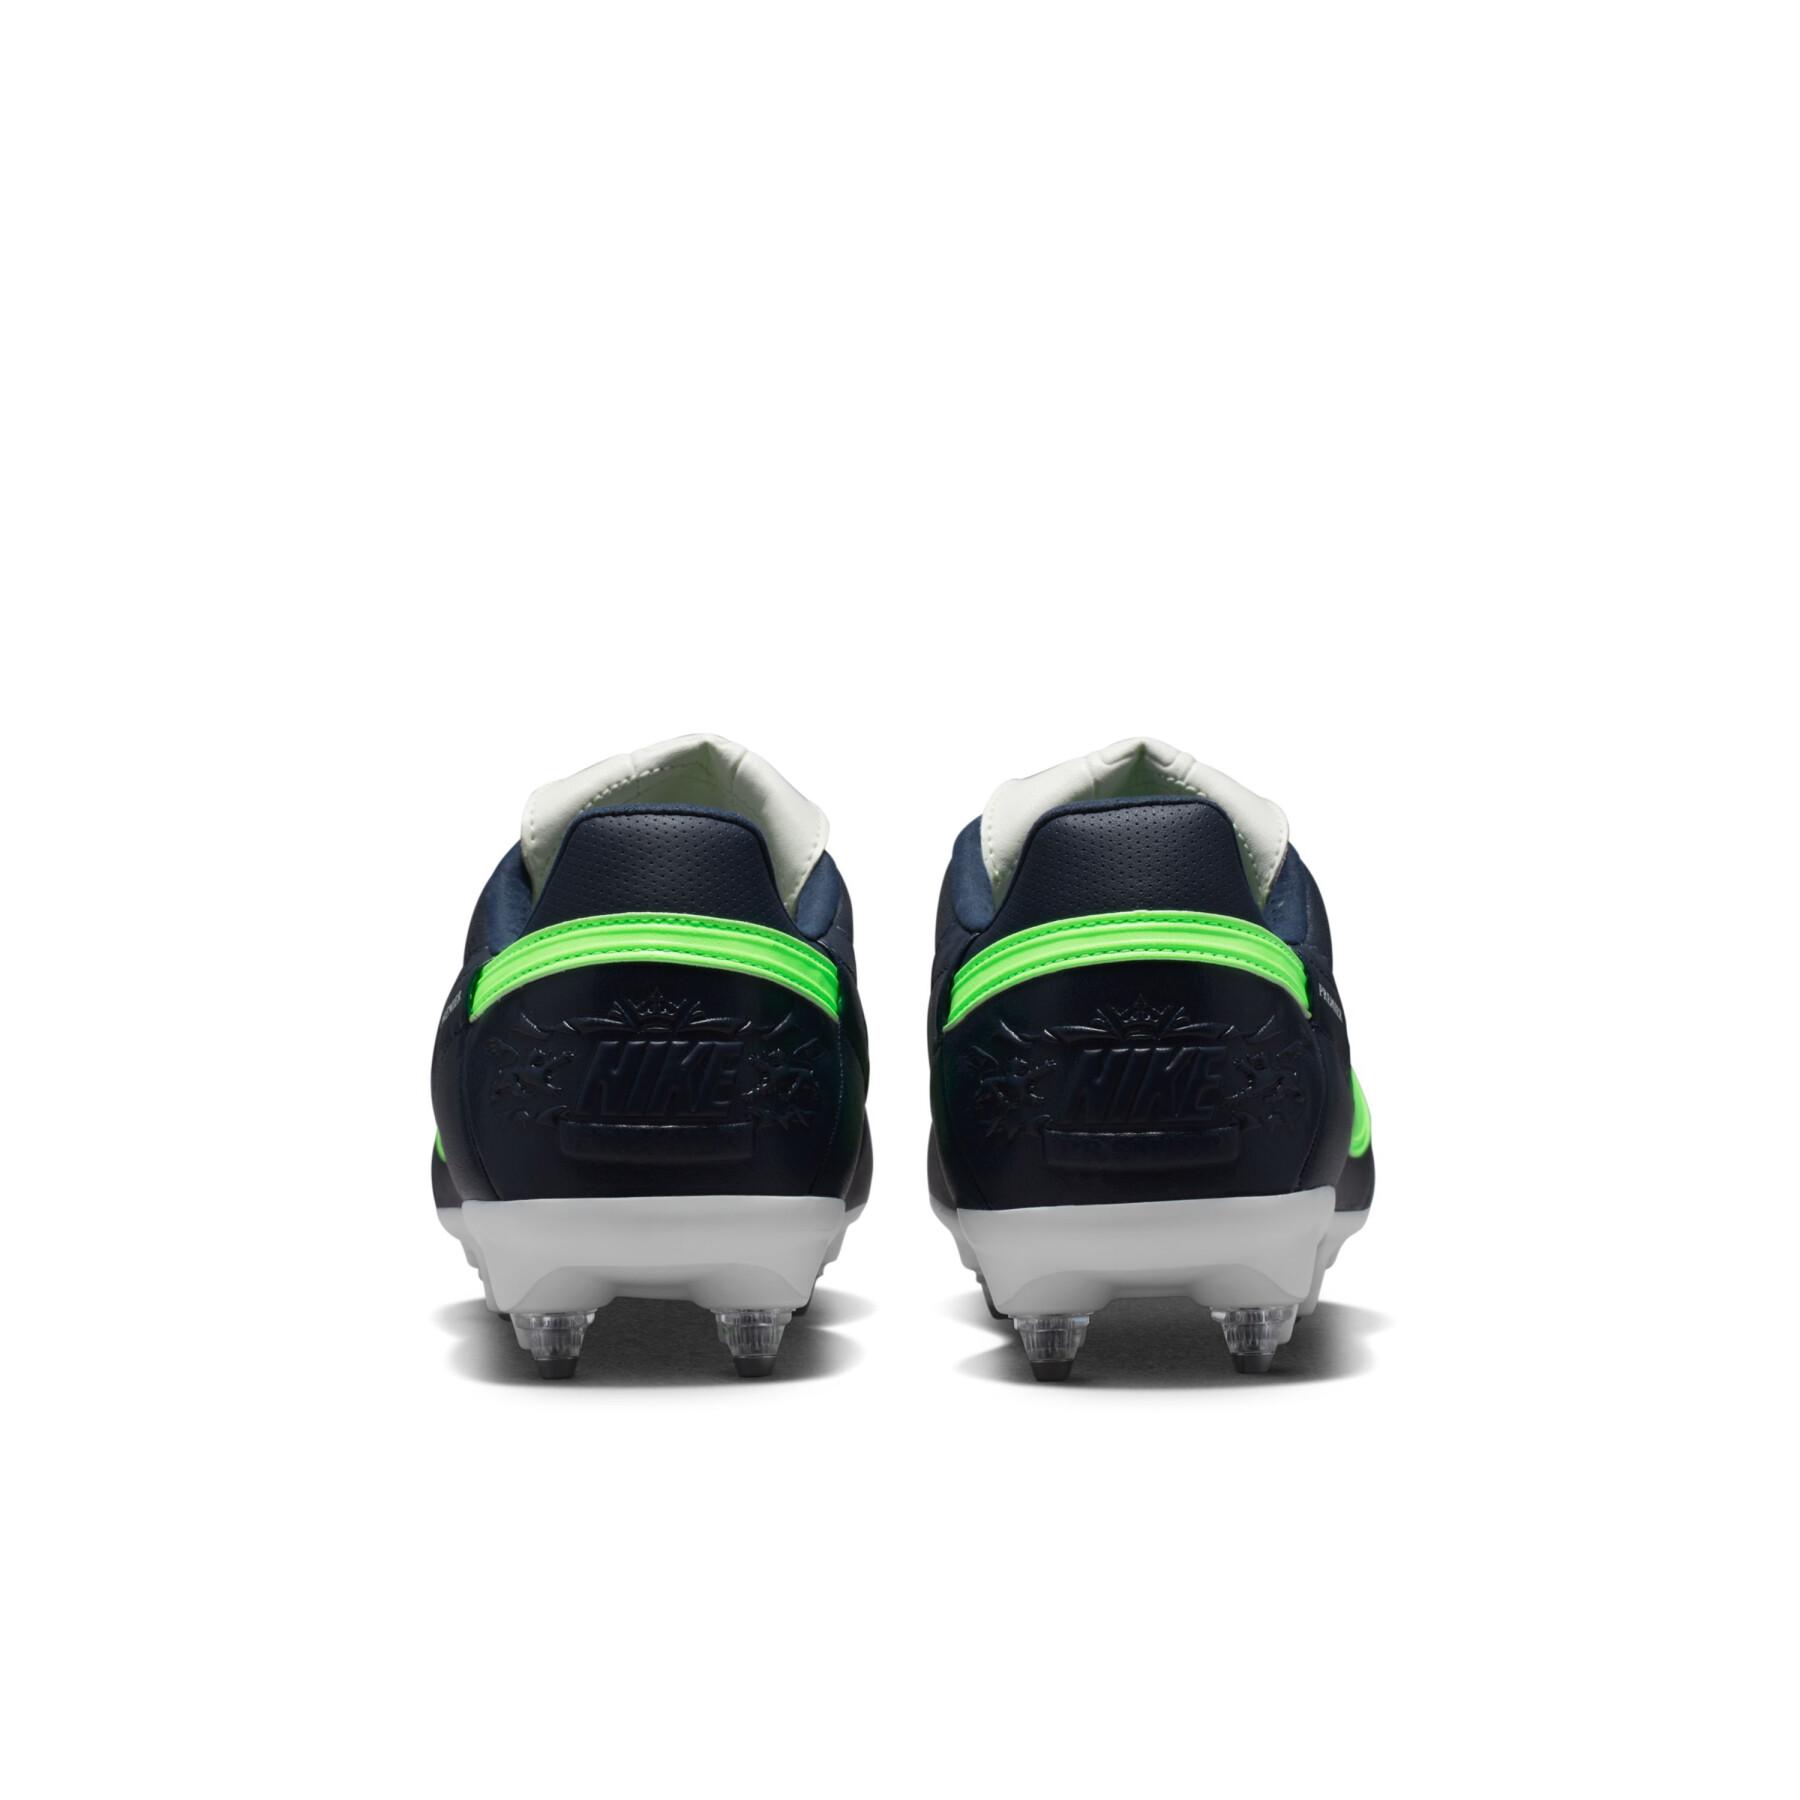 Sapatos de futebol Nike Premier 3 SG-Pro